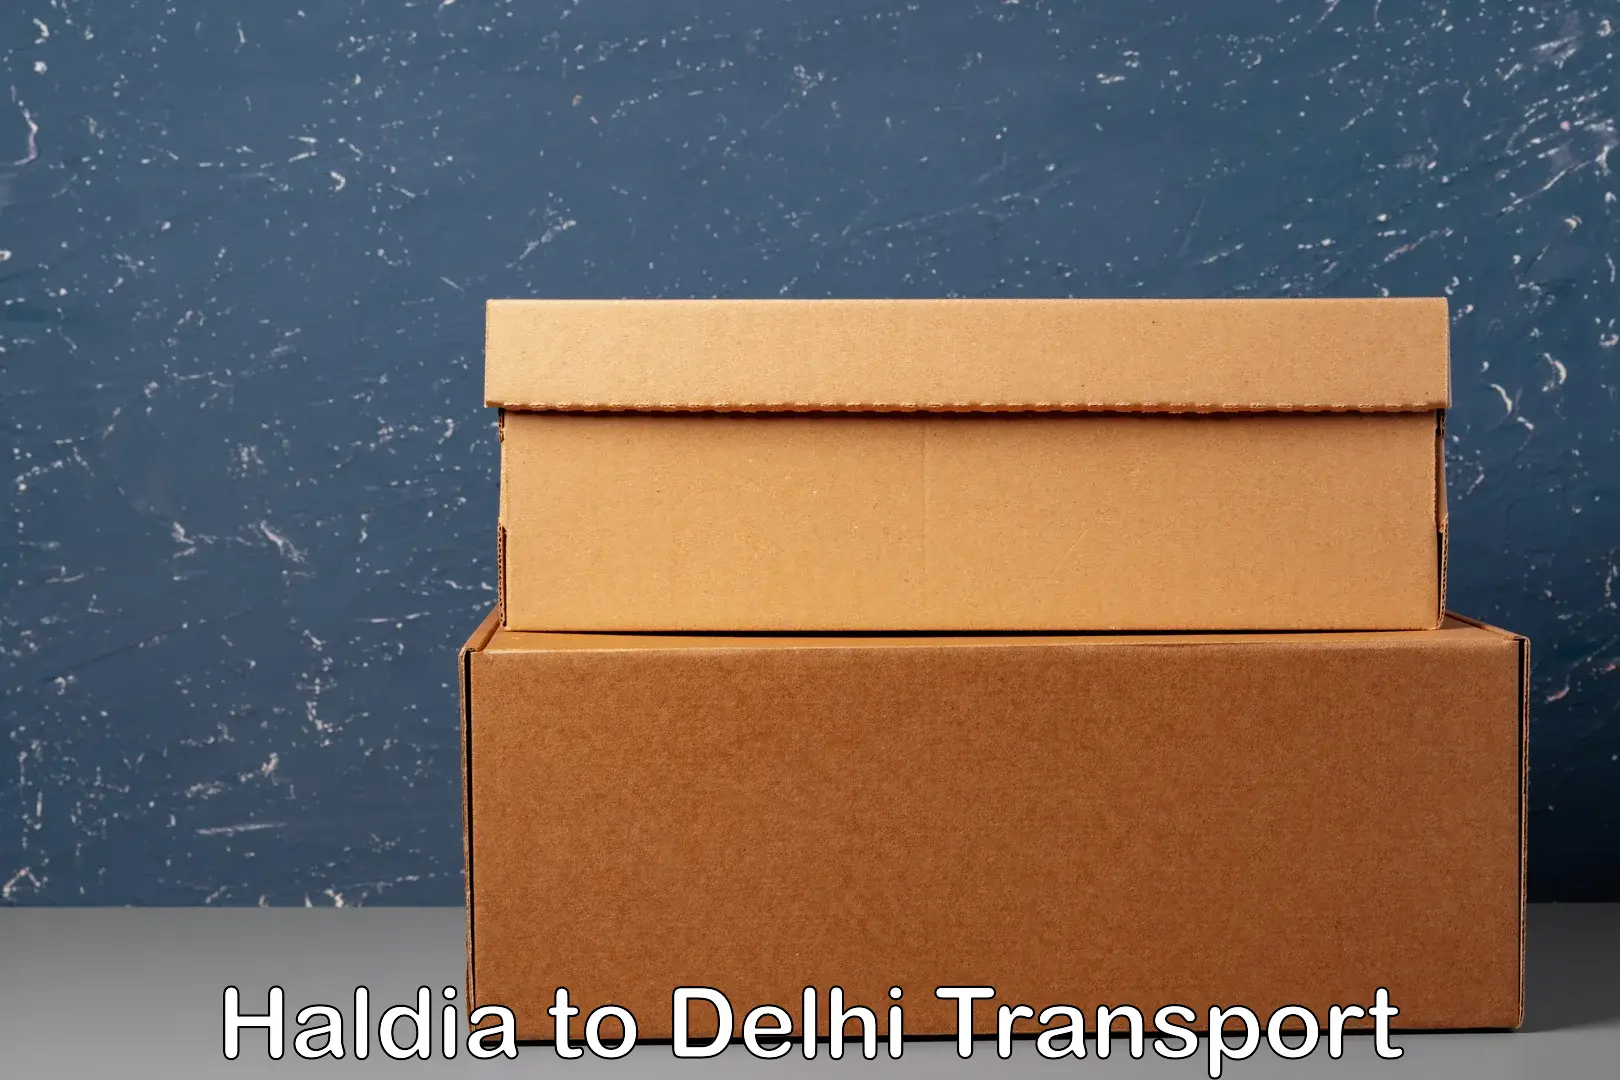 Pick up transport service Haldia to Sarojini Nagar